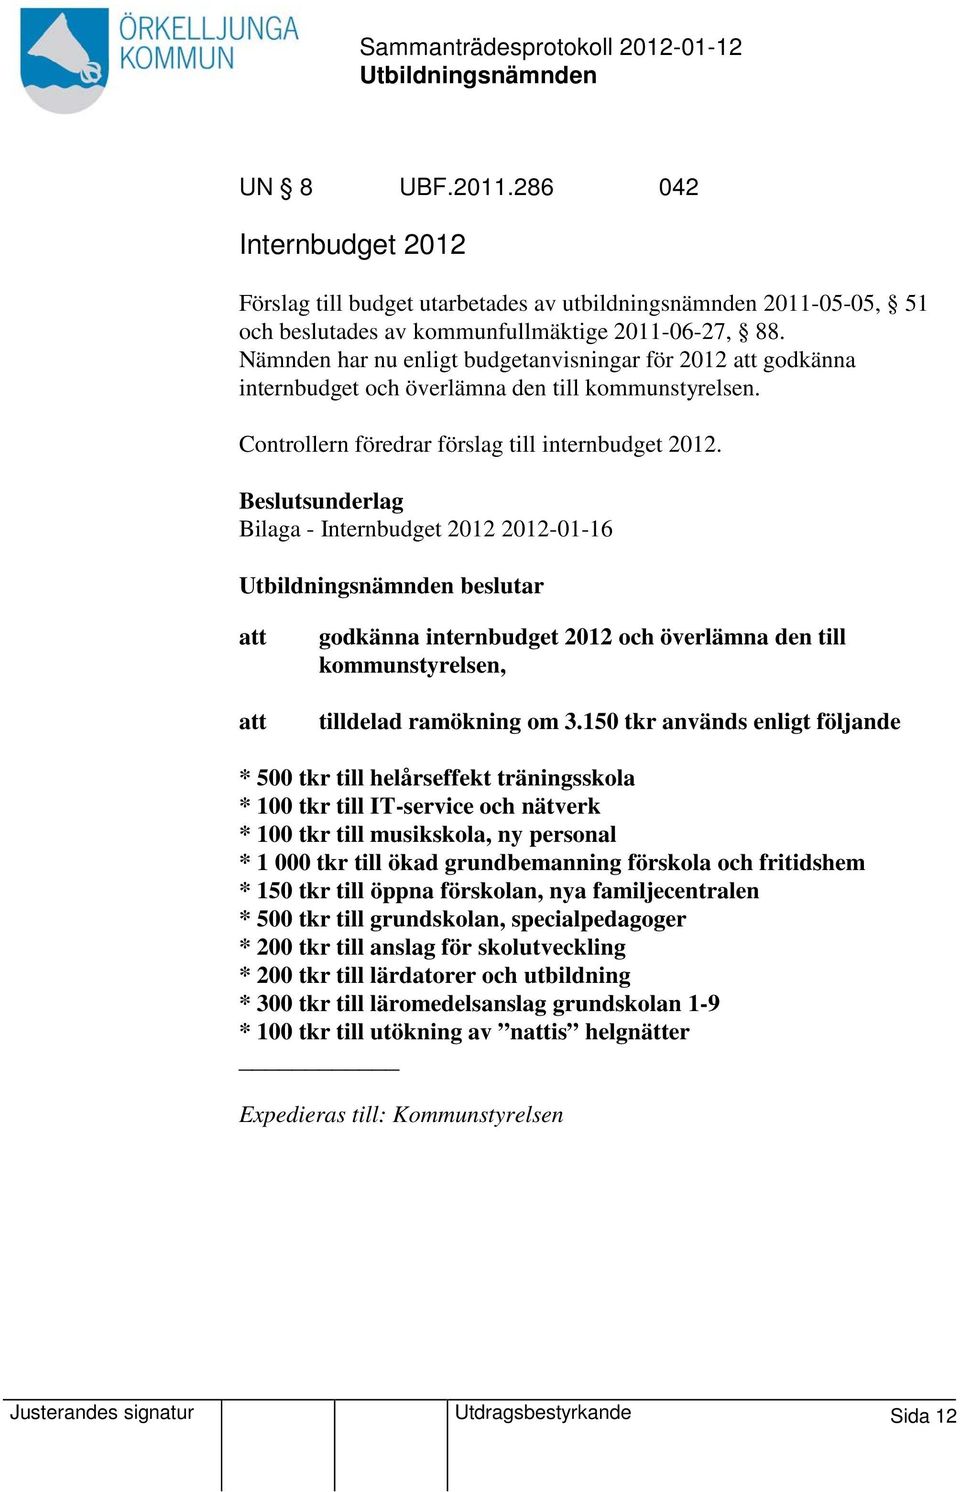 Beslutsunderlag Bilaga - Internbudget 2012 2012-01-16 beslutar godkänna internbudget 2012 och överlämna den till kommunstyrelsen, tilldelad ramökning om 3.